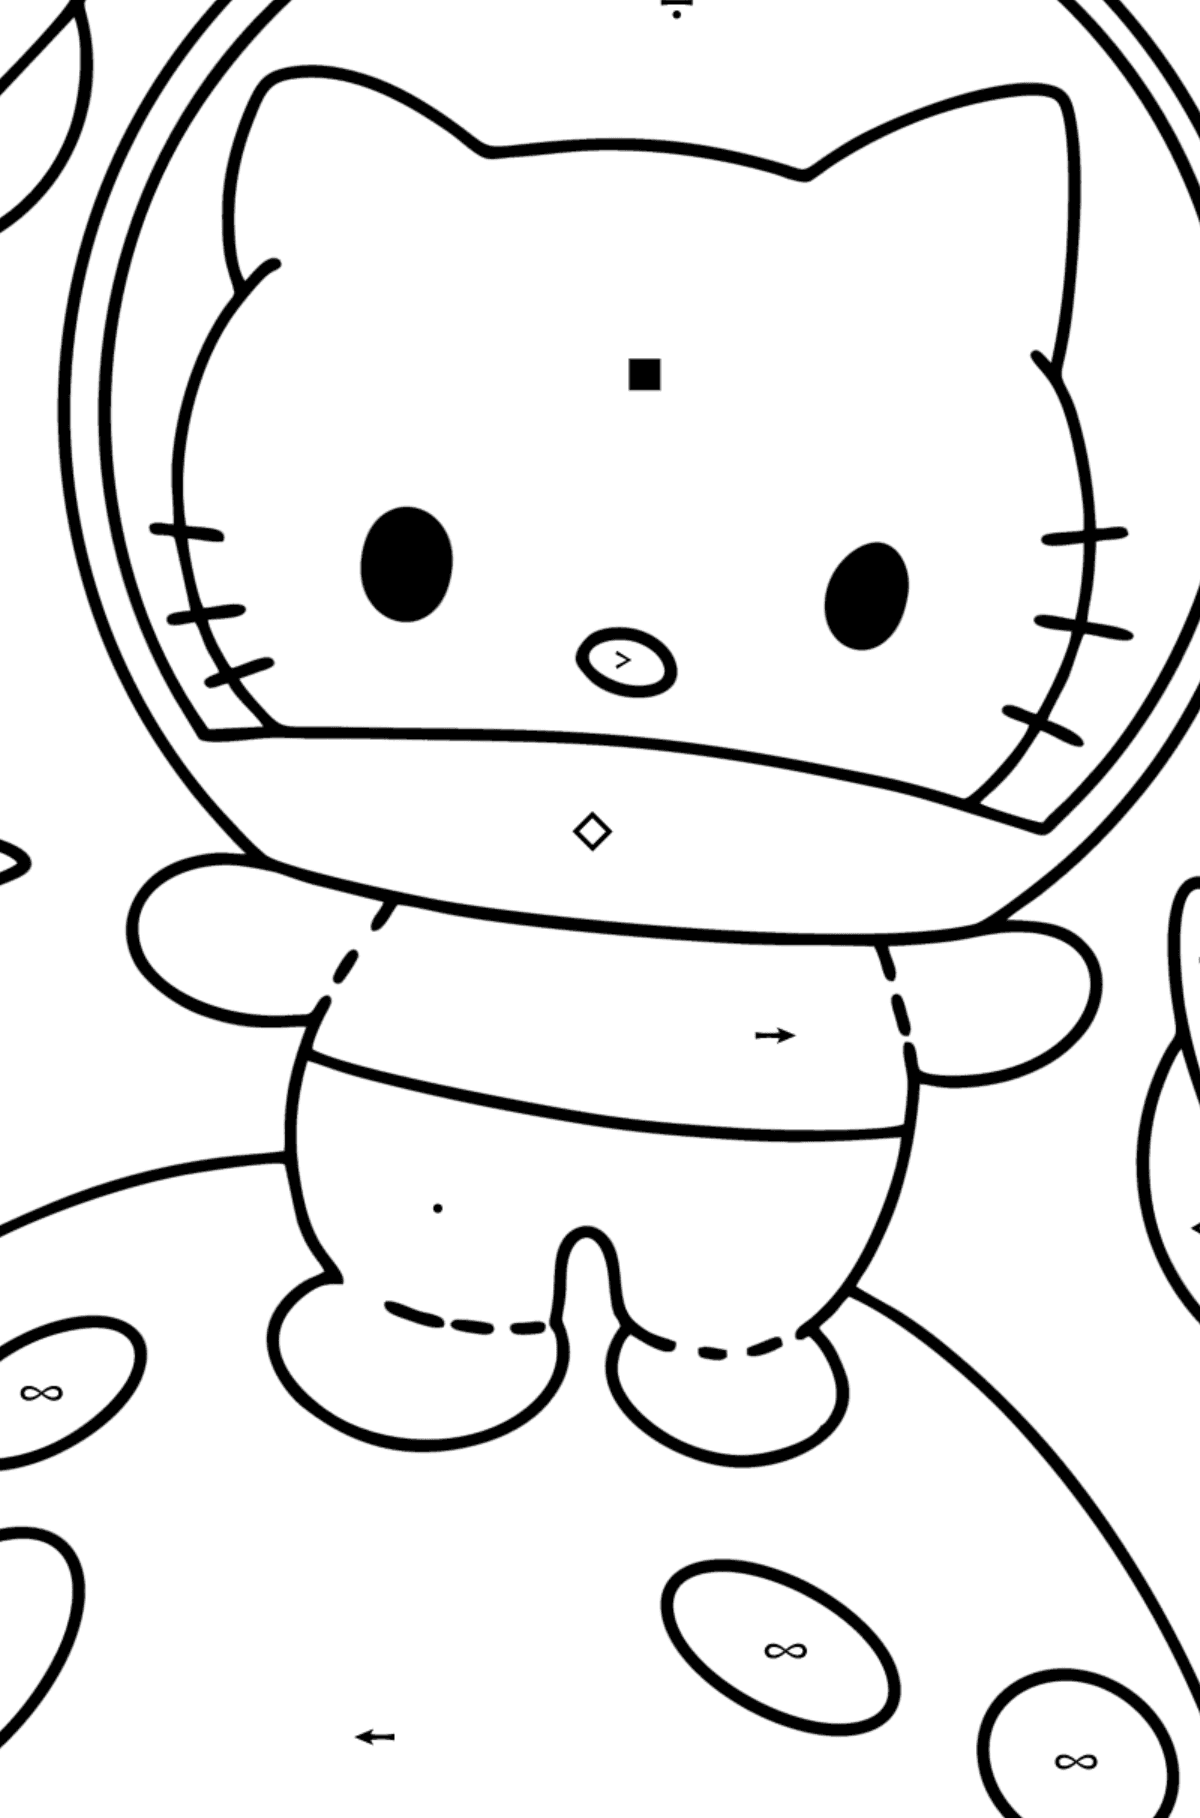 Desenho para colorir Hello Kitty Astronaut - Colorir por Símbolos para Crianças